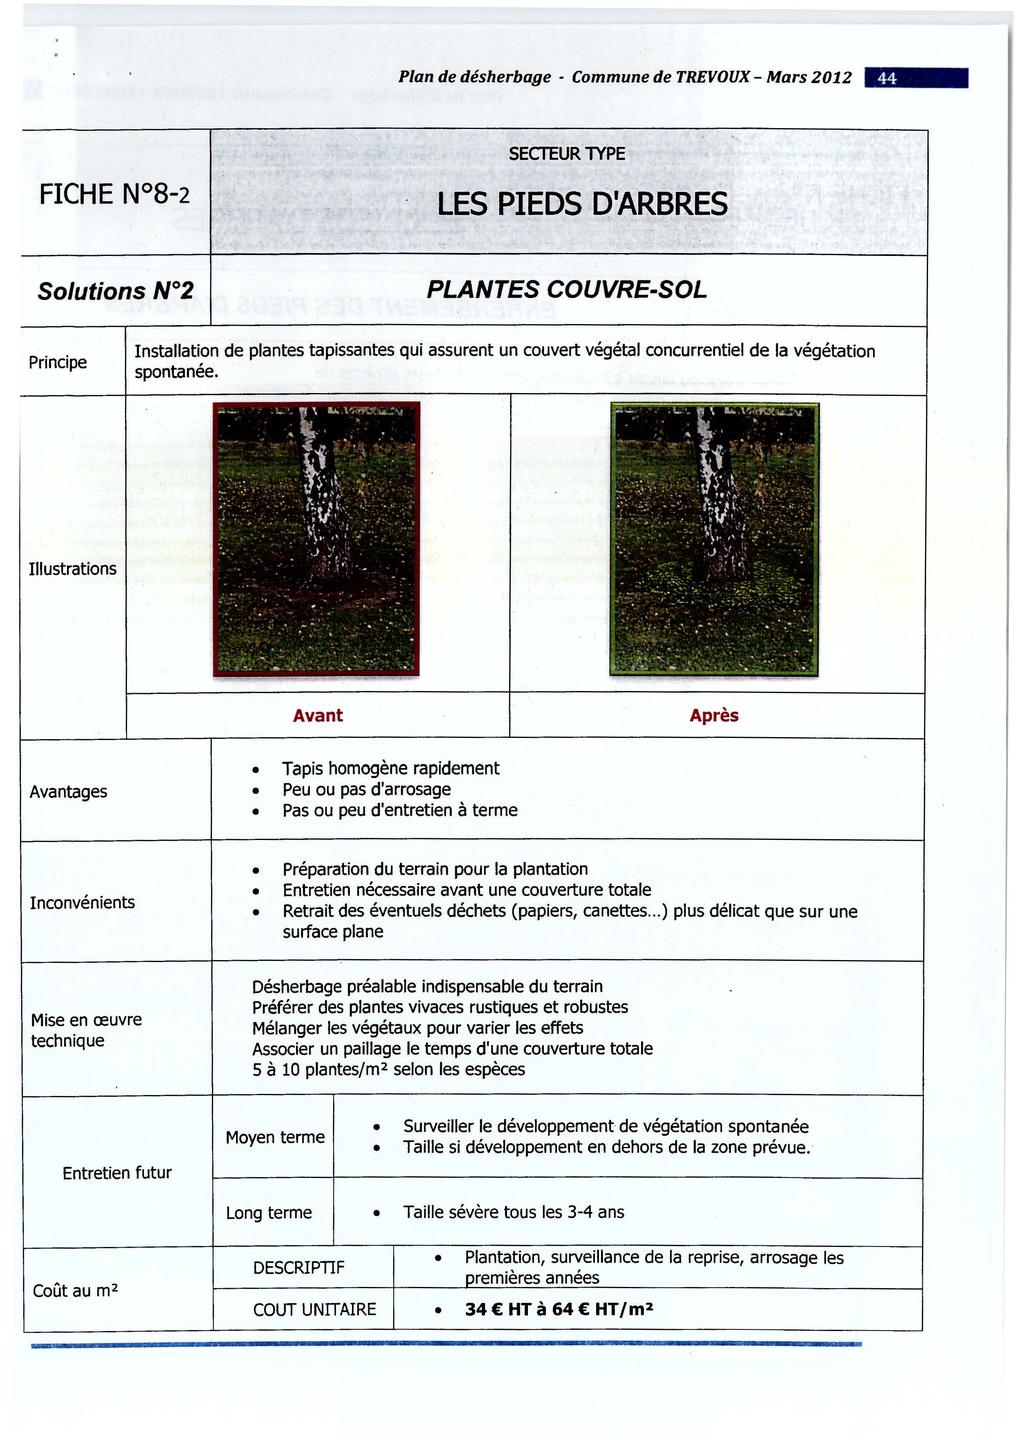 Plan de désherbage - Commune de TREVOUX- Mars 2012 - SECTEUR lype LES PIEDS D'ARBRES PLANTES COUVRE-SOL Principe Installation de plantes tapissantes qui assurent un couvert végétal concurrentiel de